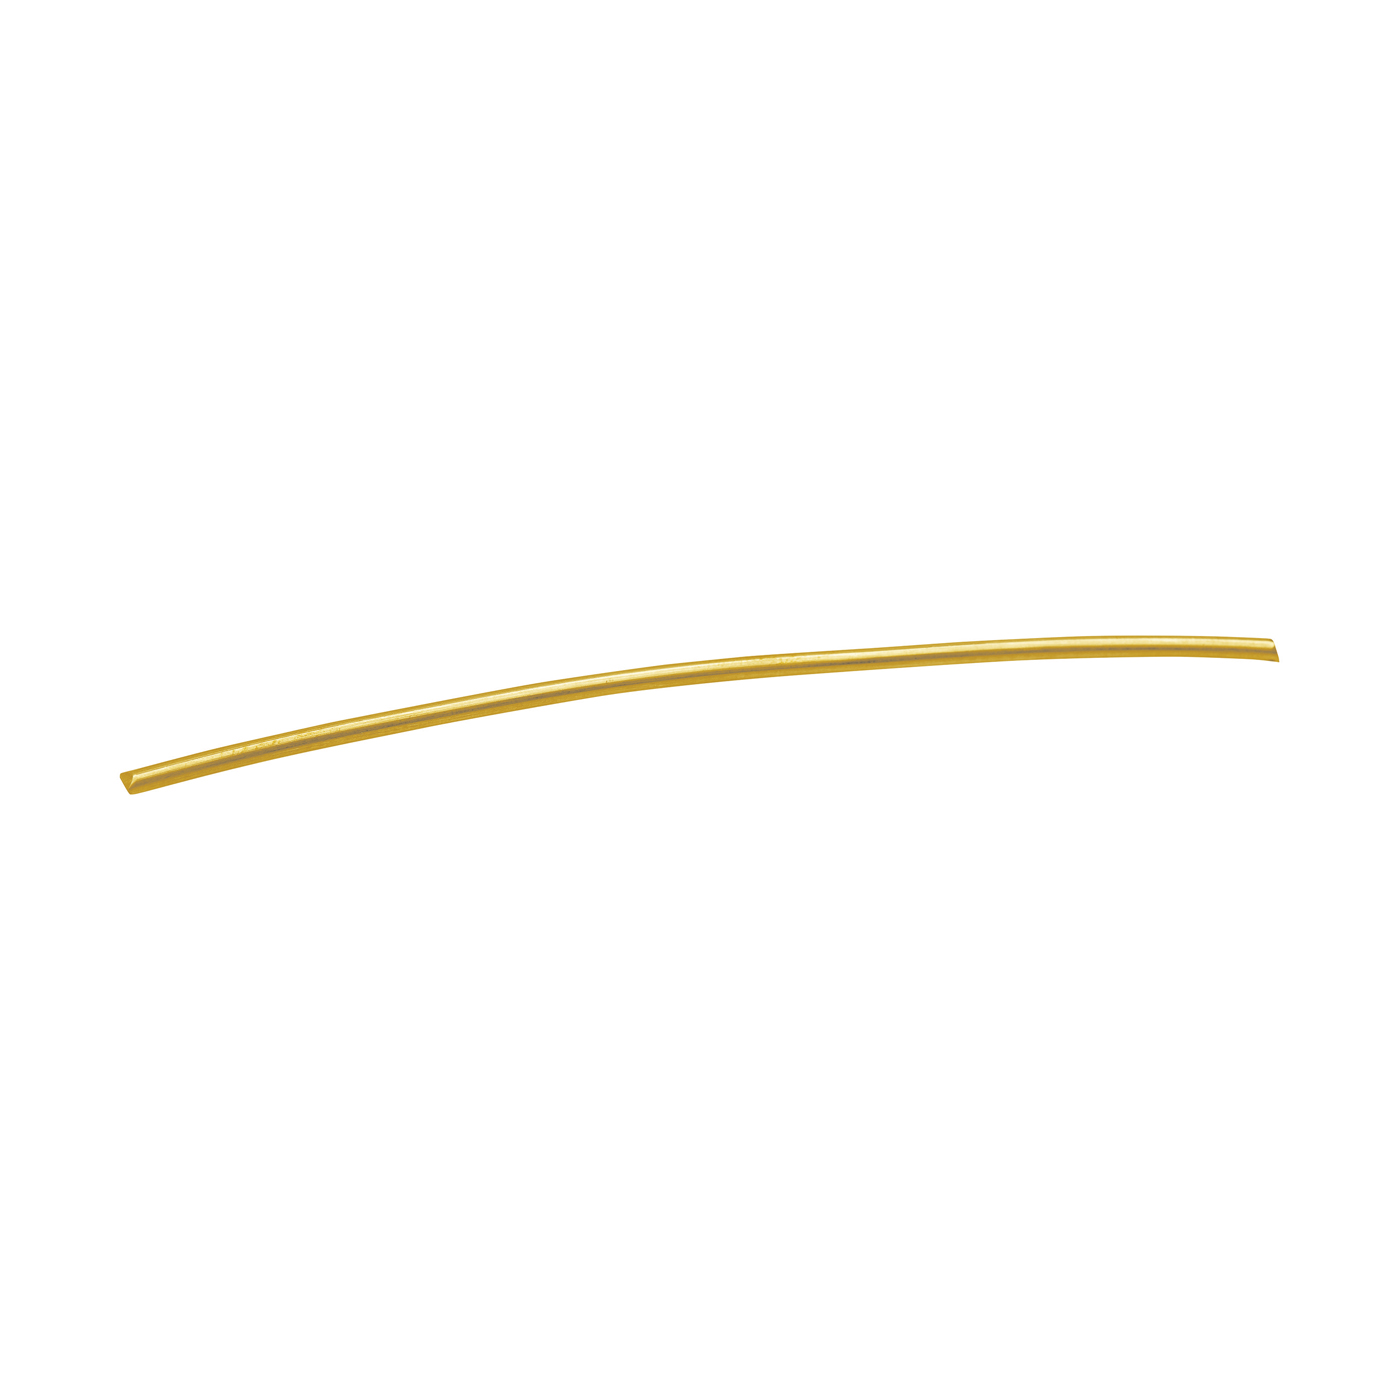 Round Wire, 585G, ø 1 mm, Length 15 cm - 1 piece